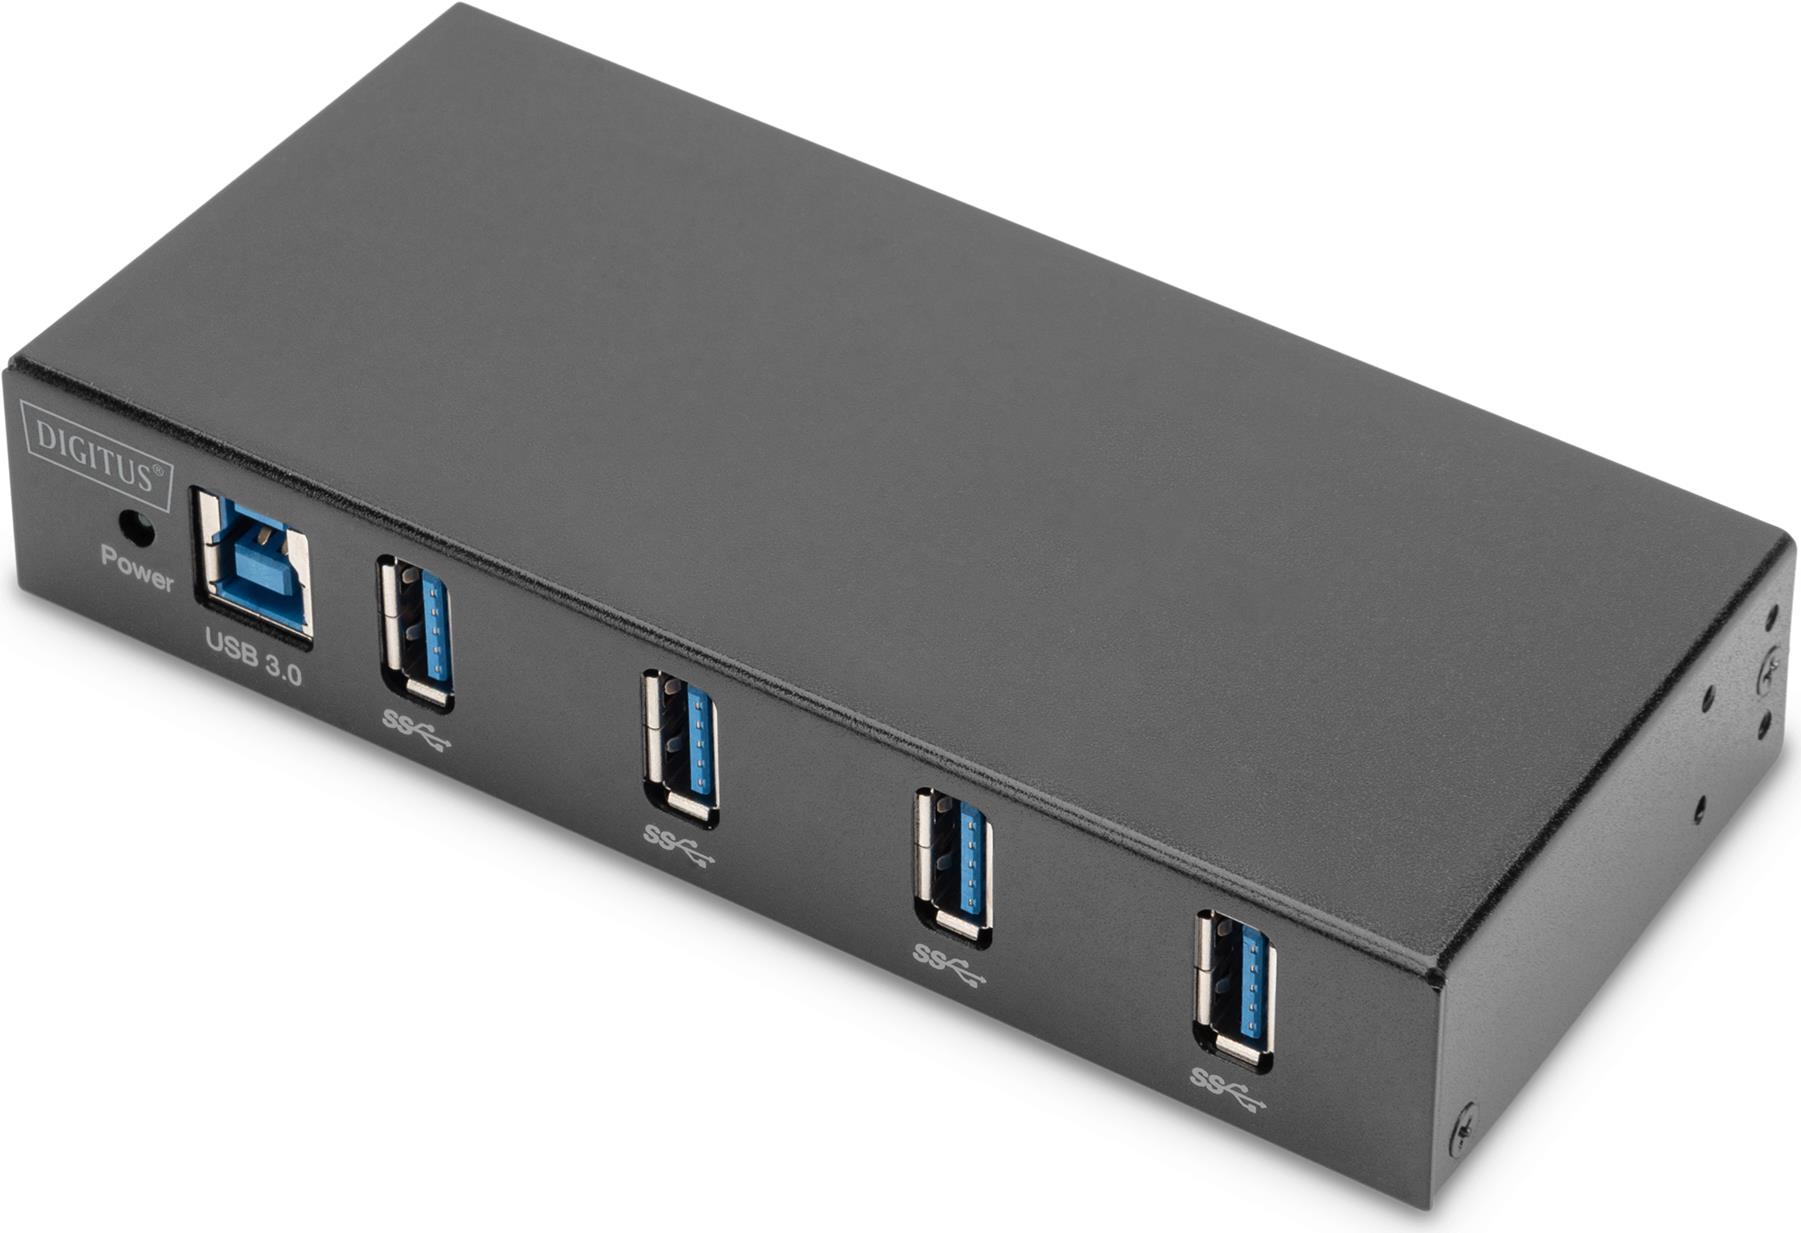 Digitus USB 3.0 Hub, 4-Port, Industrial Line. Hostschnittstelle: USB 3.2 Gen 1 (3.1 Gen 1) Type-B, Hub-Schnittstellen: USB 3.2 Gen 1 (3.1 Gen 1) Type-A. Datenübertragungsrate: 5000 Mbit/s, Produktfarbe: Schwarz, Gehäusematerial: Metall. Netzteiltyp: Gleichstrom, Stromverbrauch (max.): 18 W, Eingangsspannung: 9 - 24 V. Breite: 69 mm, Tiefe: 139 mm, Höhe: 25 mm. Menge pro Packung: 1 Stück(e), Verpackungsbreite: 187 mm, Verpackungstiefe: 140 mm (DA-70257)